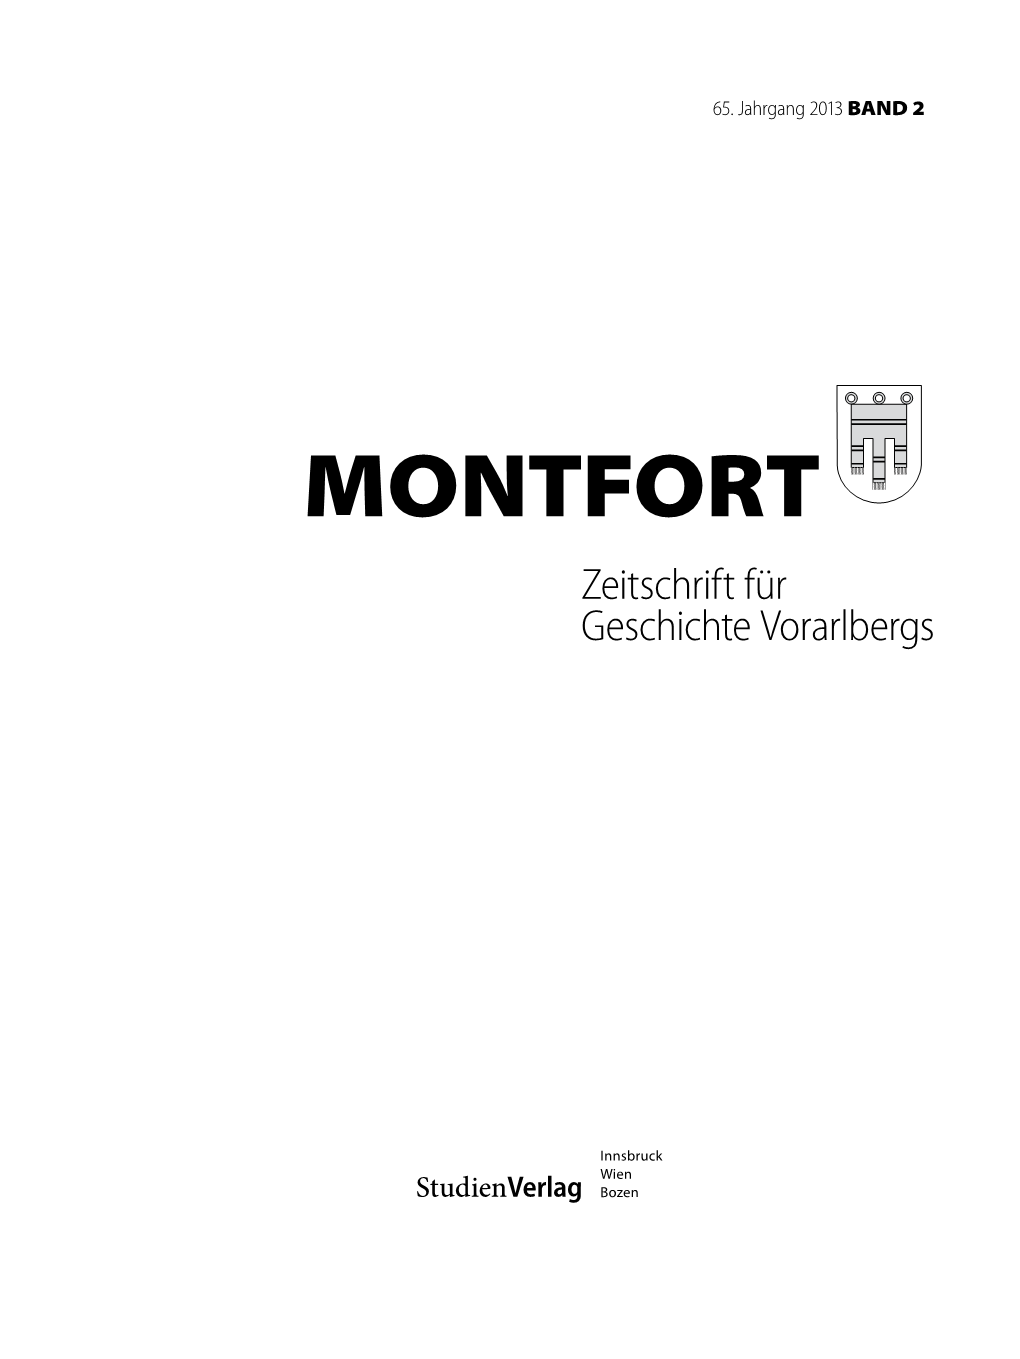 MONTFORT Zeitschrift Für Geschichte Vorarlbergs